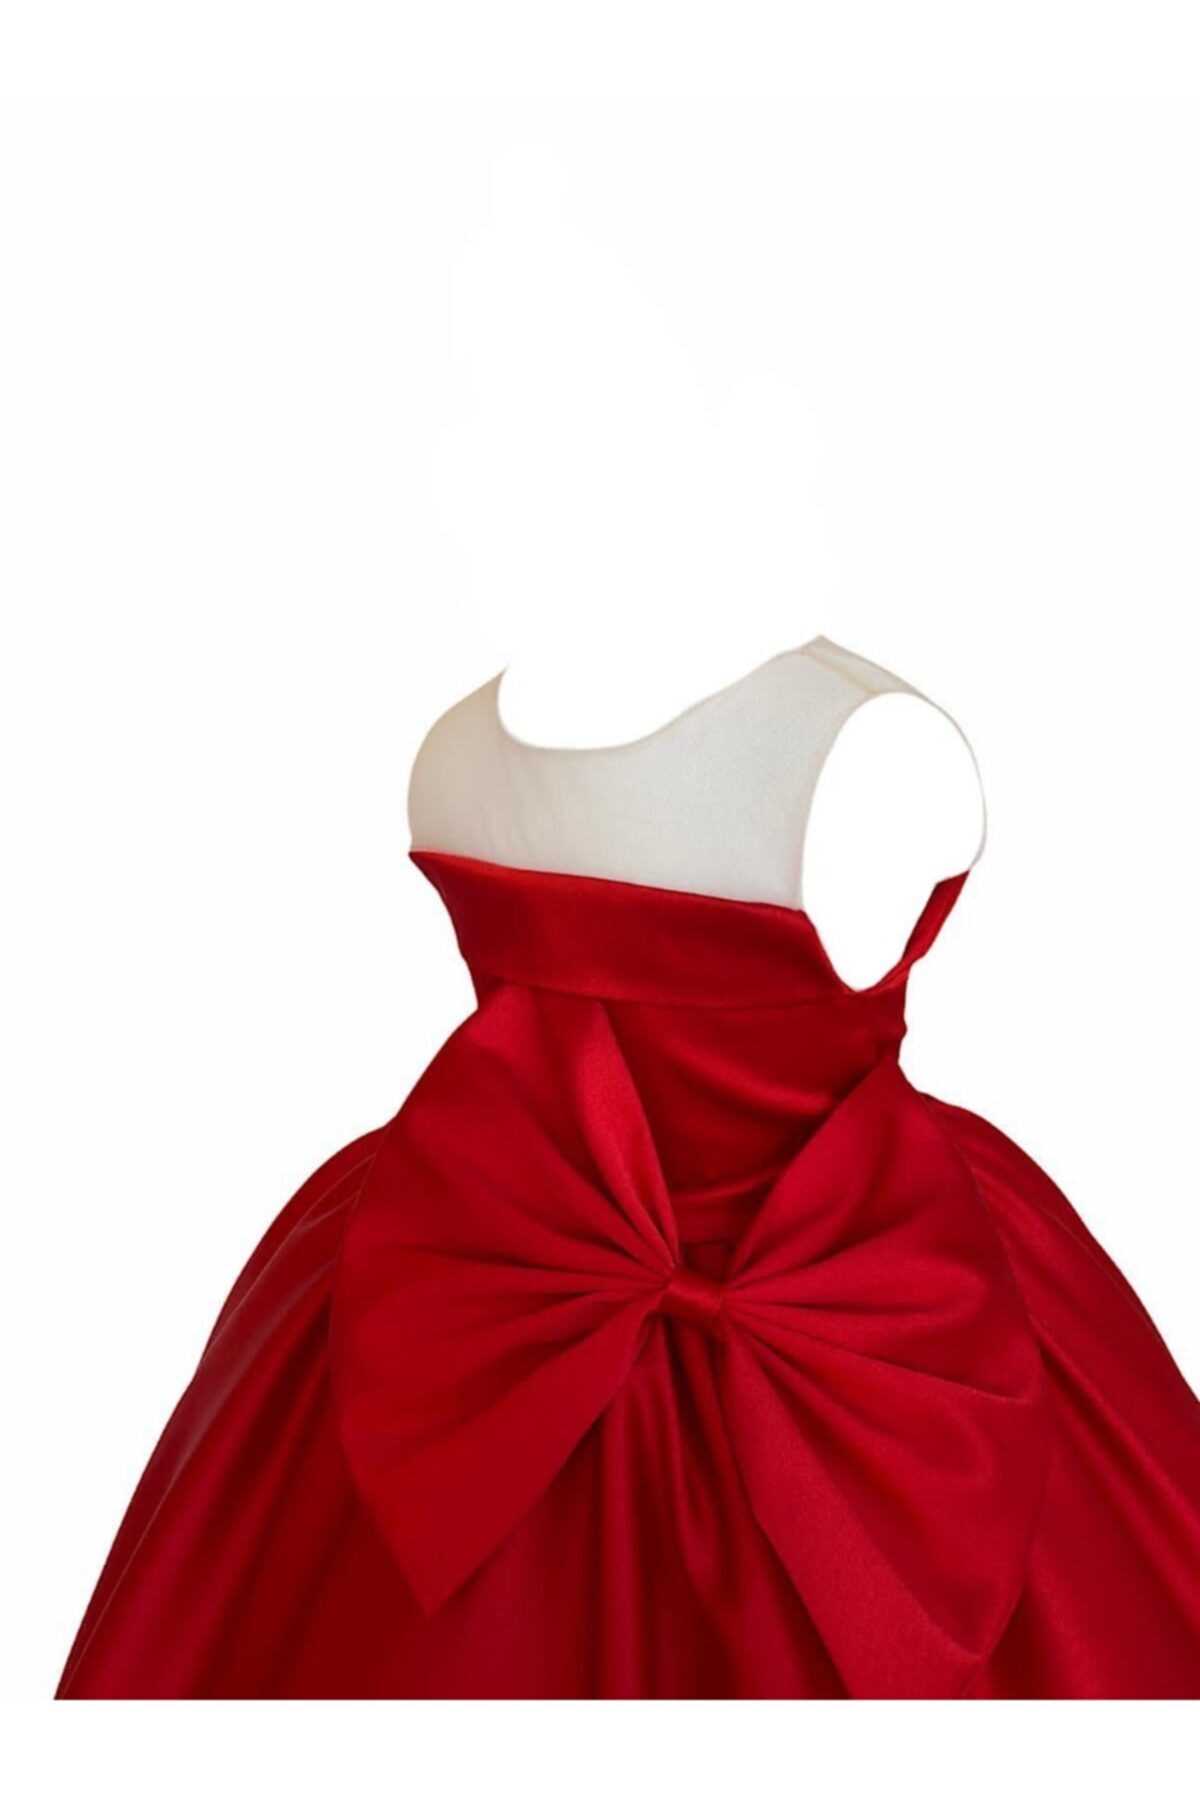 خرید انلاین لباس مجلسی زیبا دخترانه شیک zühre balaban رنگ قرمز ty103646196